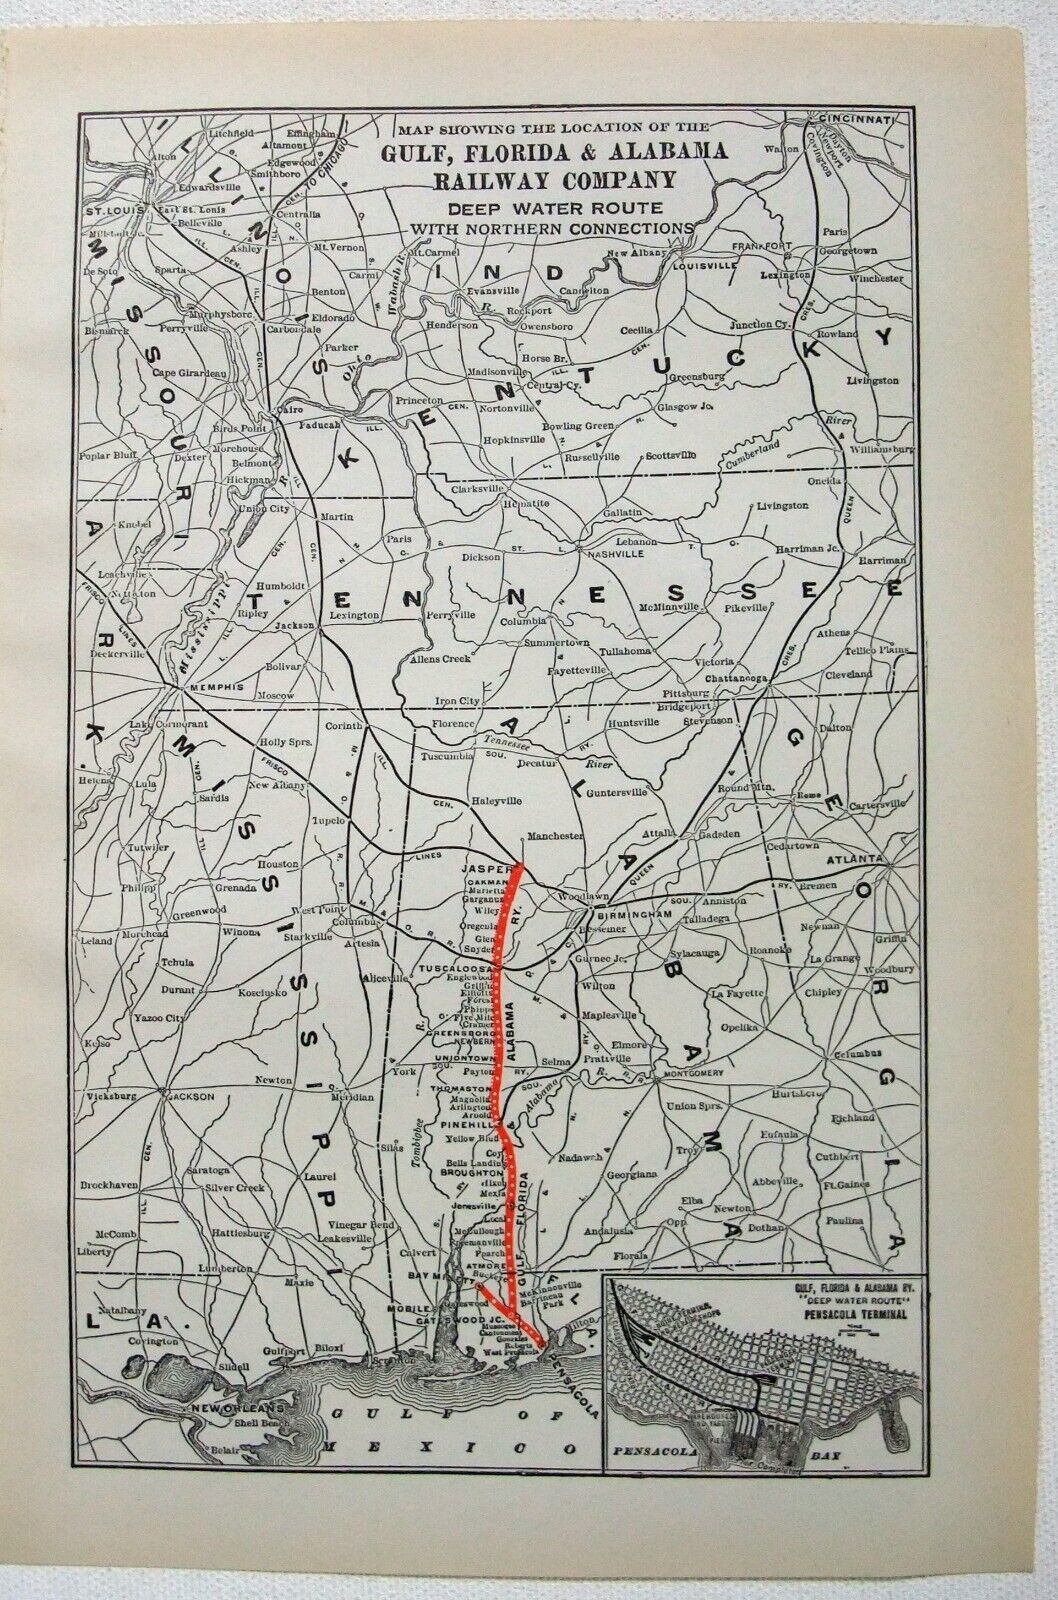 Gulf, Florida & Alabama Railway Company - Original 1914 System Map. Antique